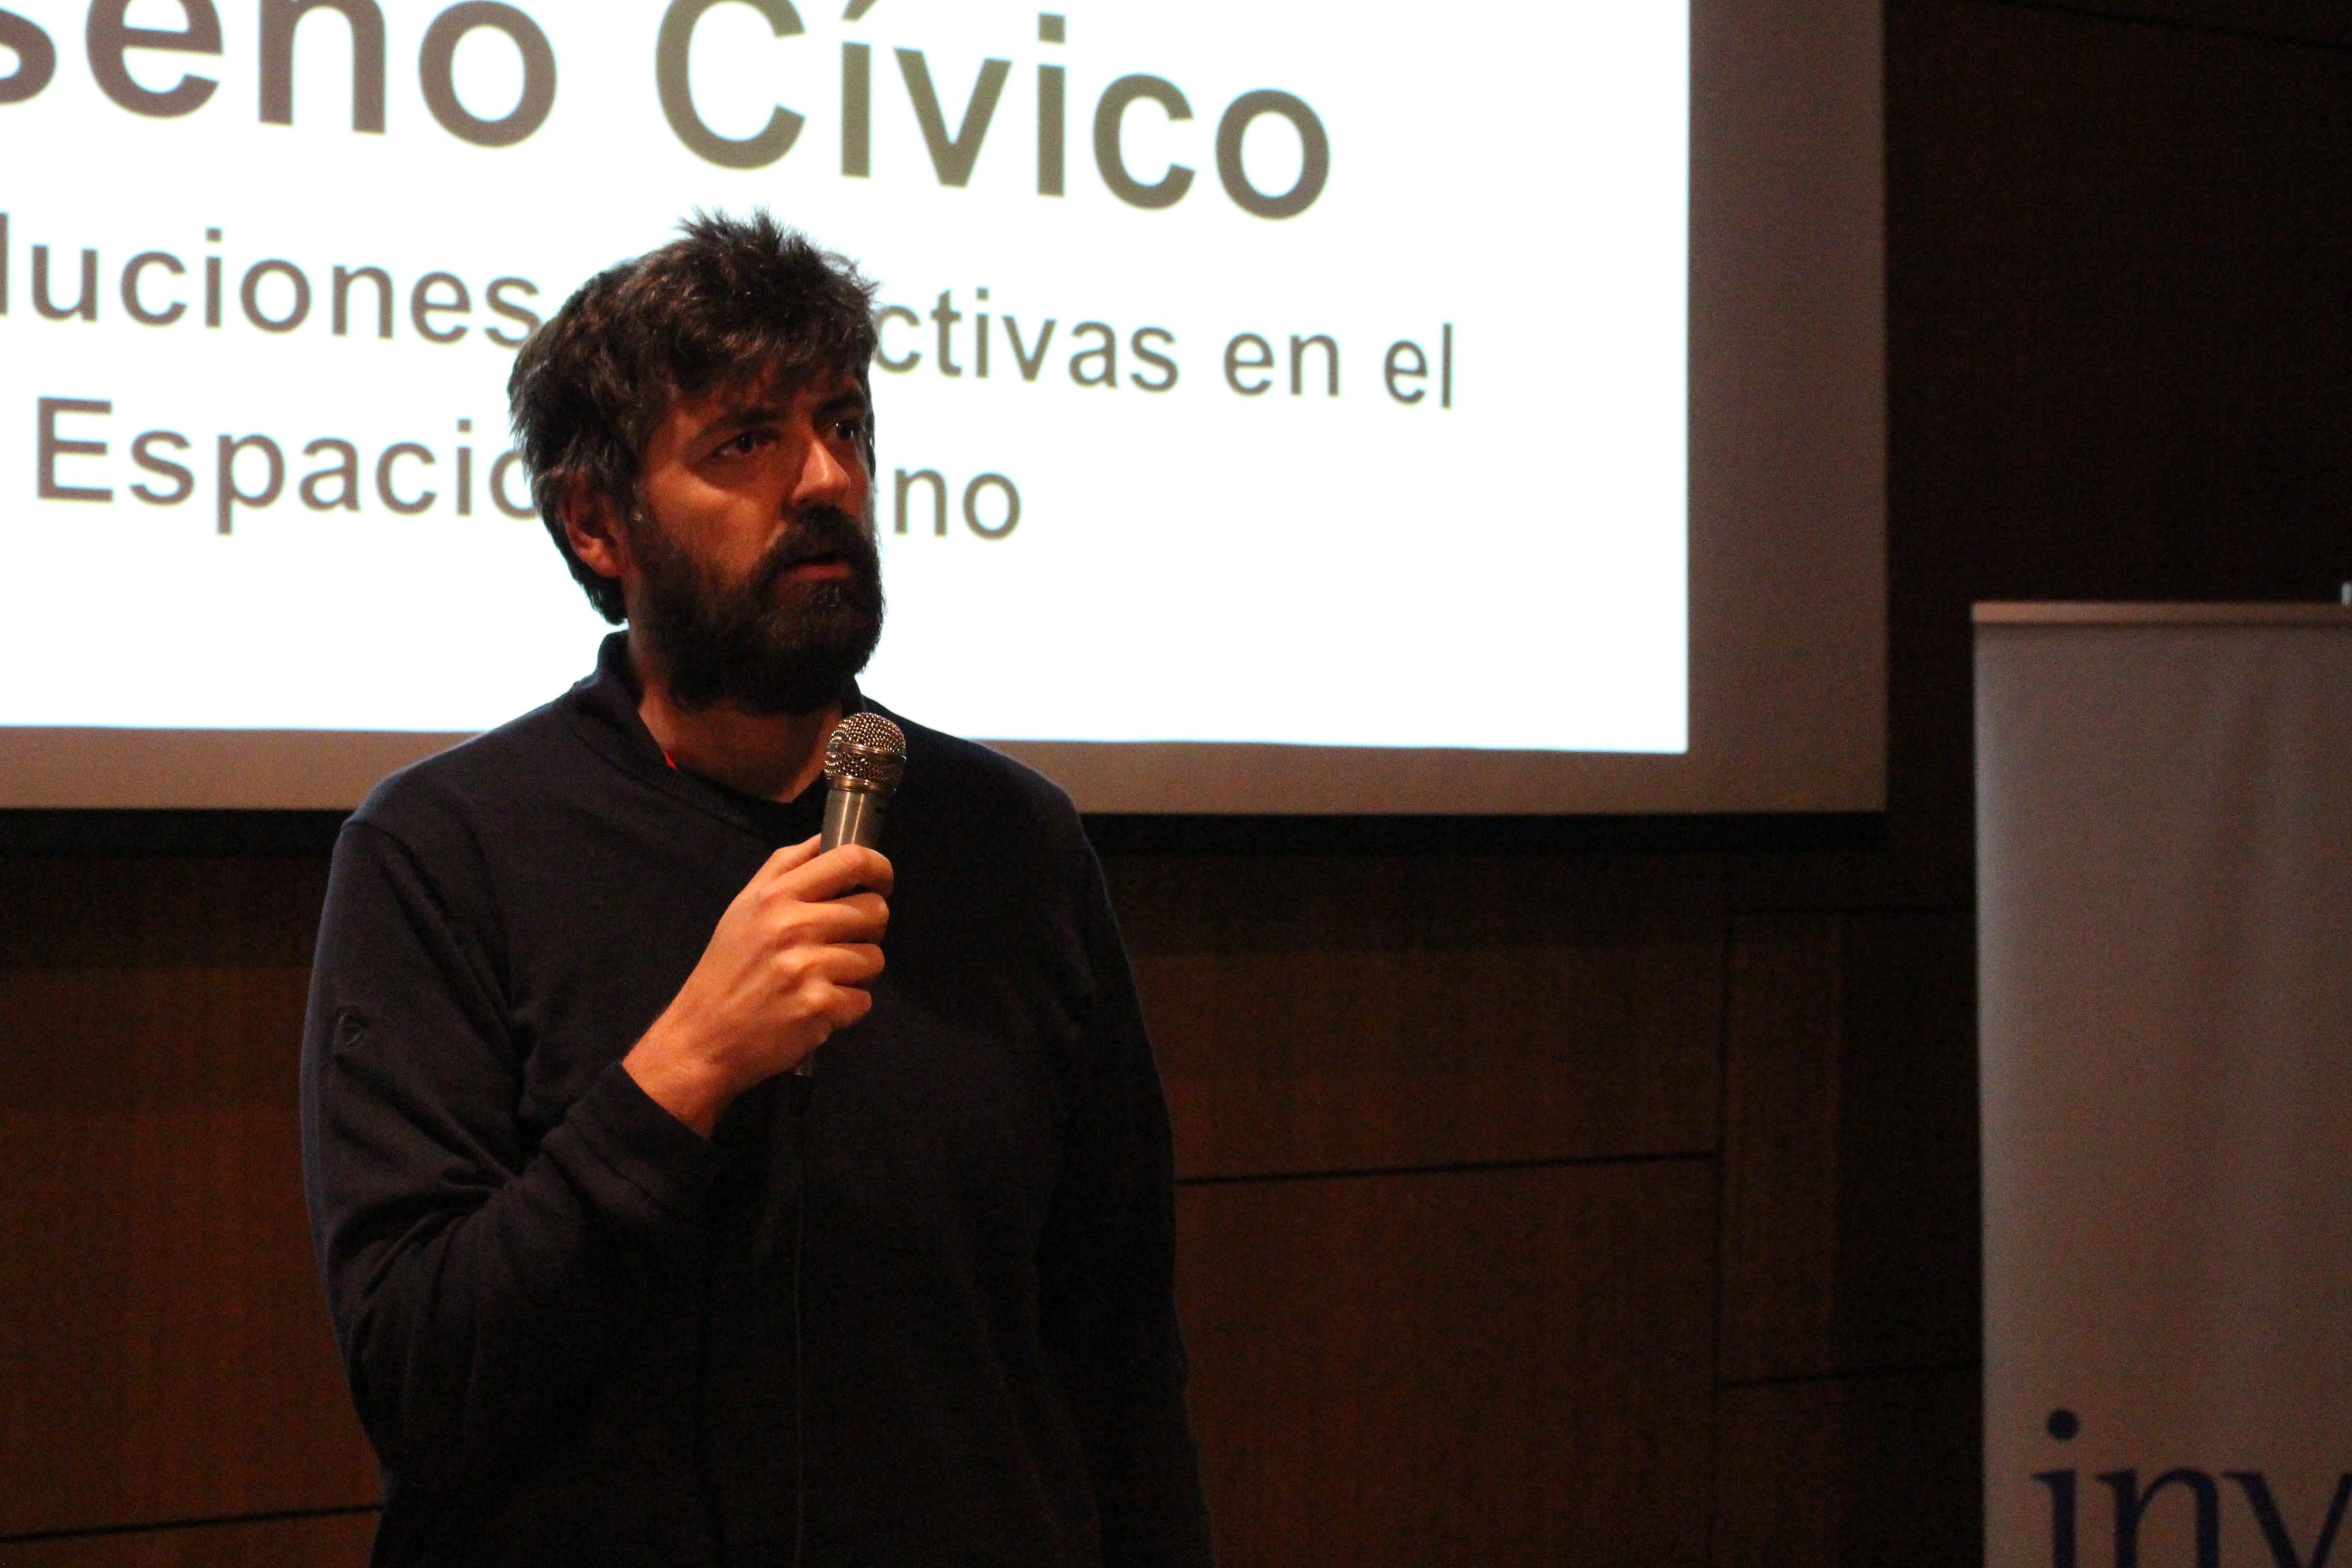 Doménico Di Siena en charla abierta "Diseño Cívico para soluciones colectivas en el espacio urbano".